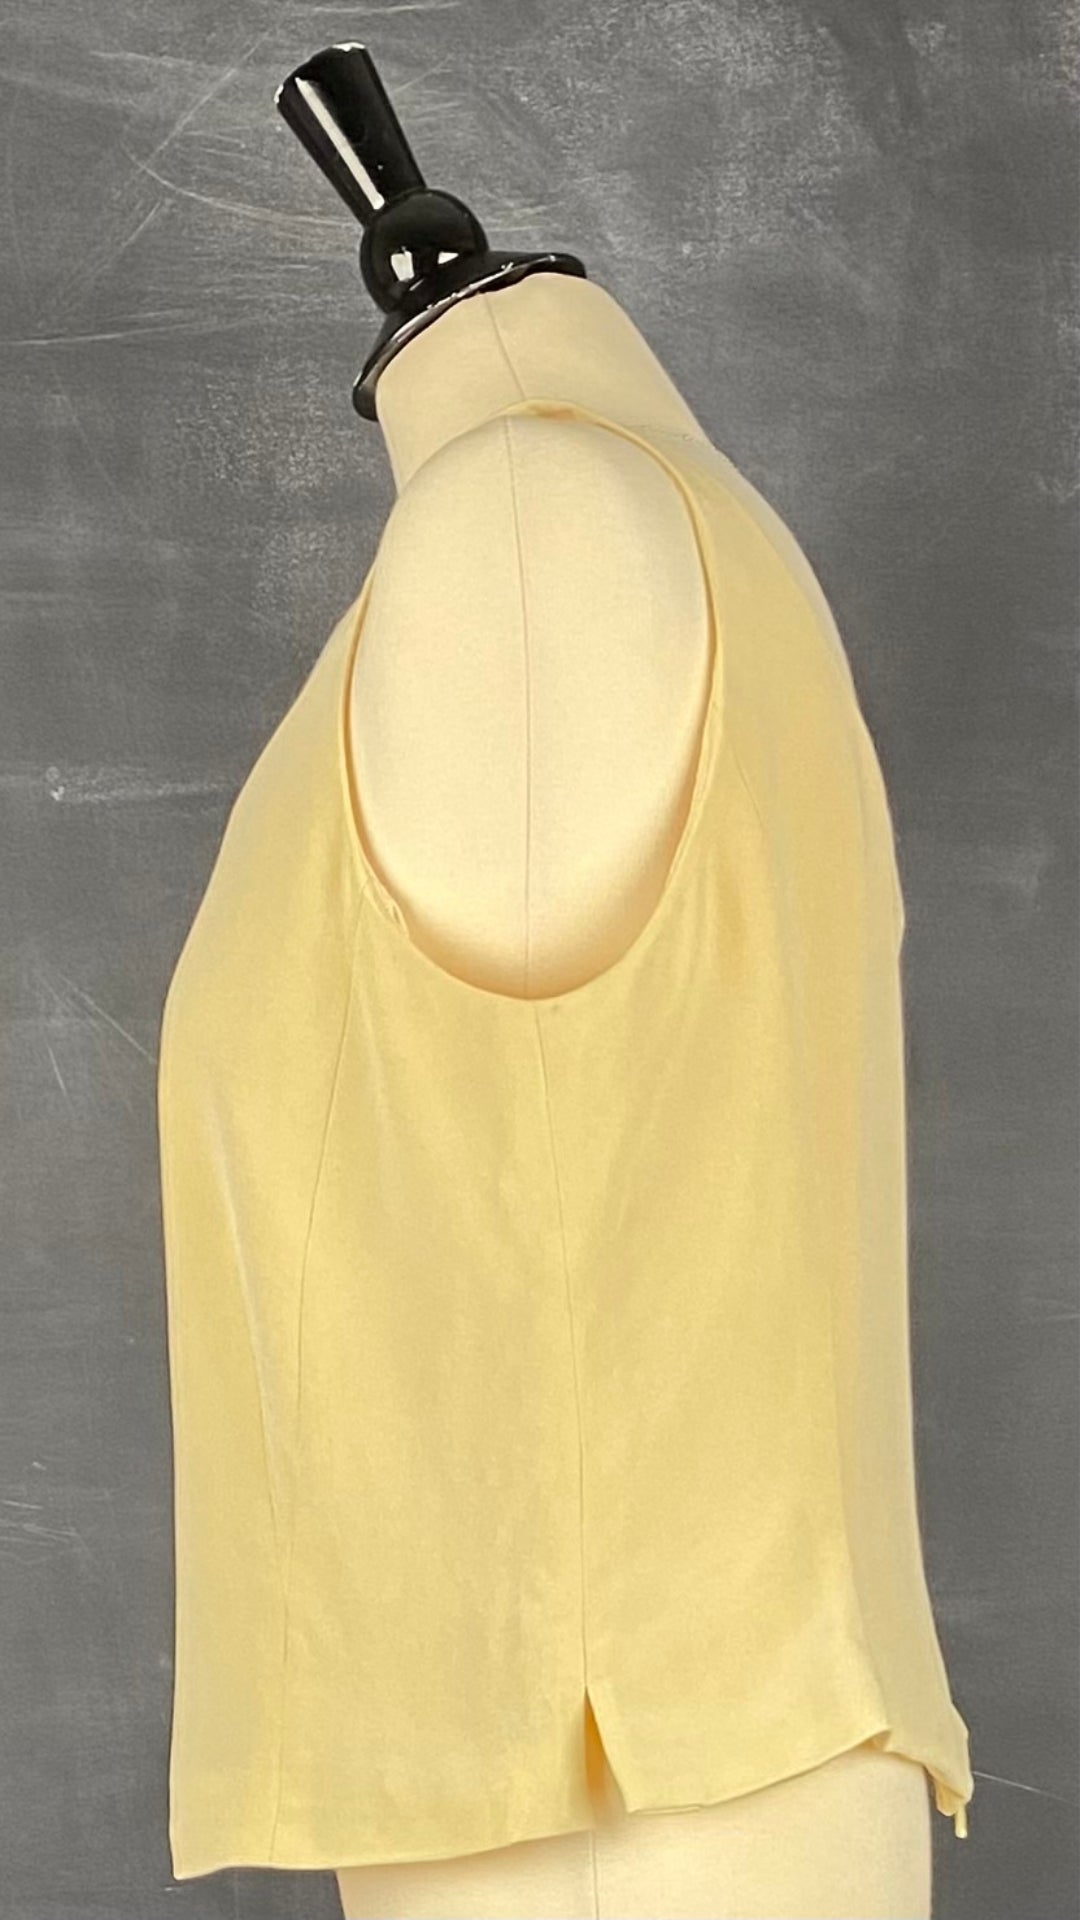 Camisole doublée en soie jaune doux Simon Chang, taille 16. Vue de côté.